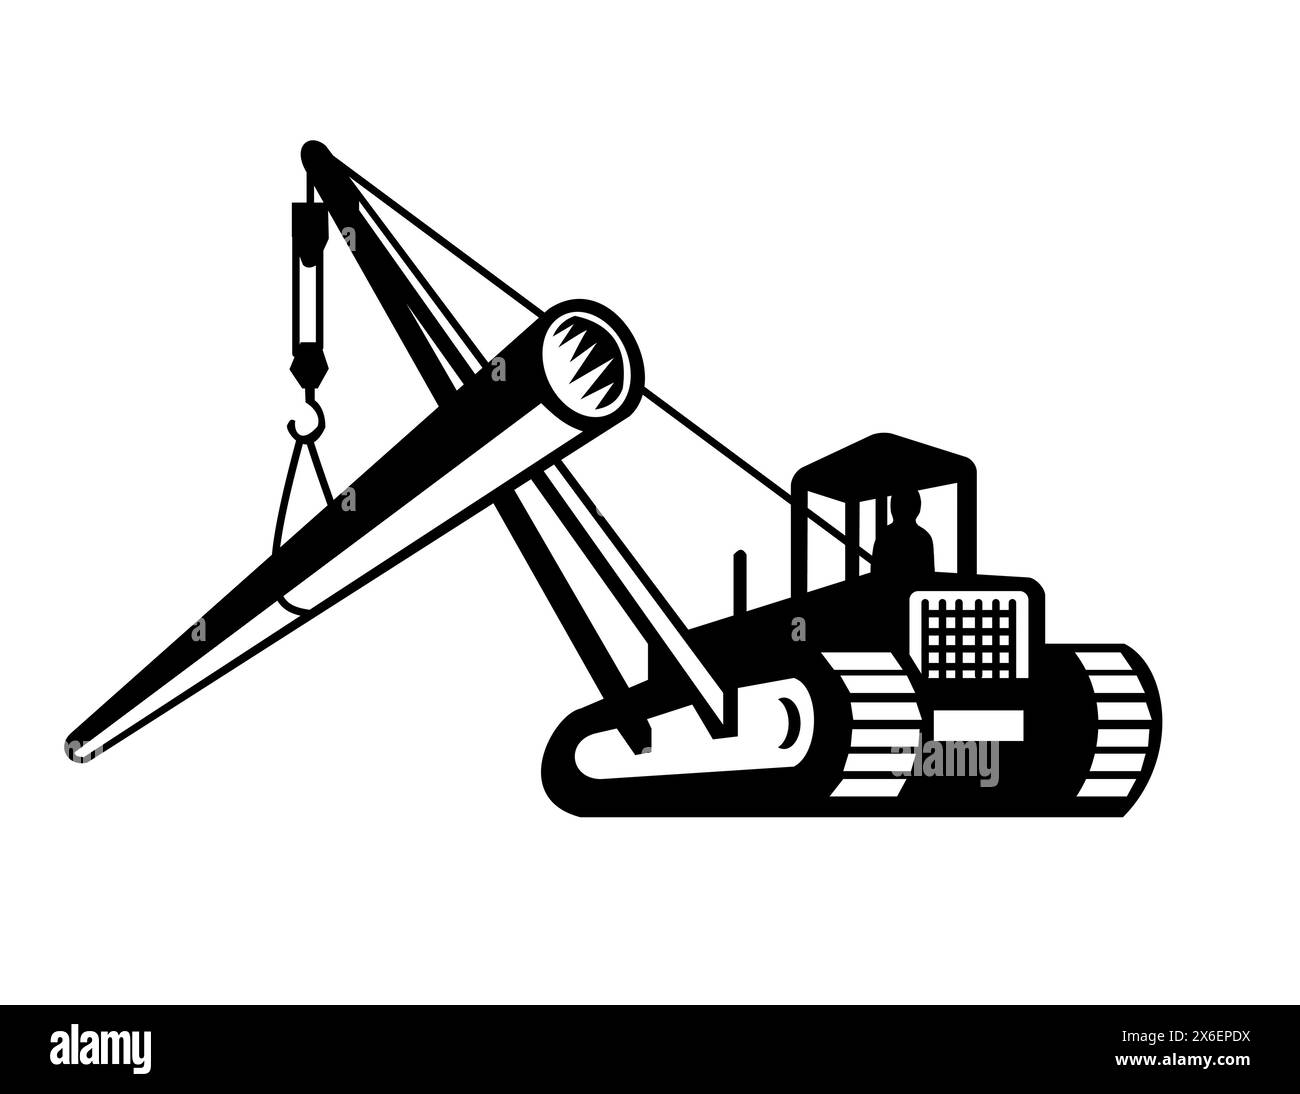 Immagine a mascotte di un escavatore con braccio gru che posa il tubo visto da un lato con un angolo basso su sfondo isolato in bianco e nero retrò Illustrazione Vettoriale